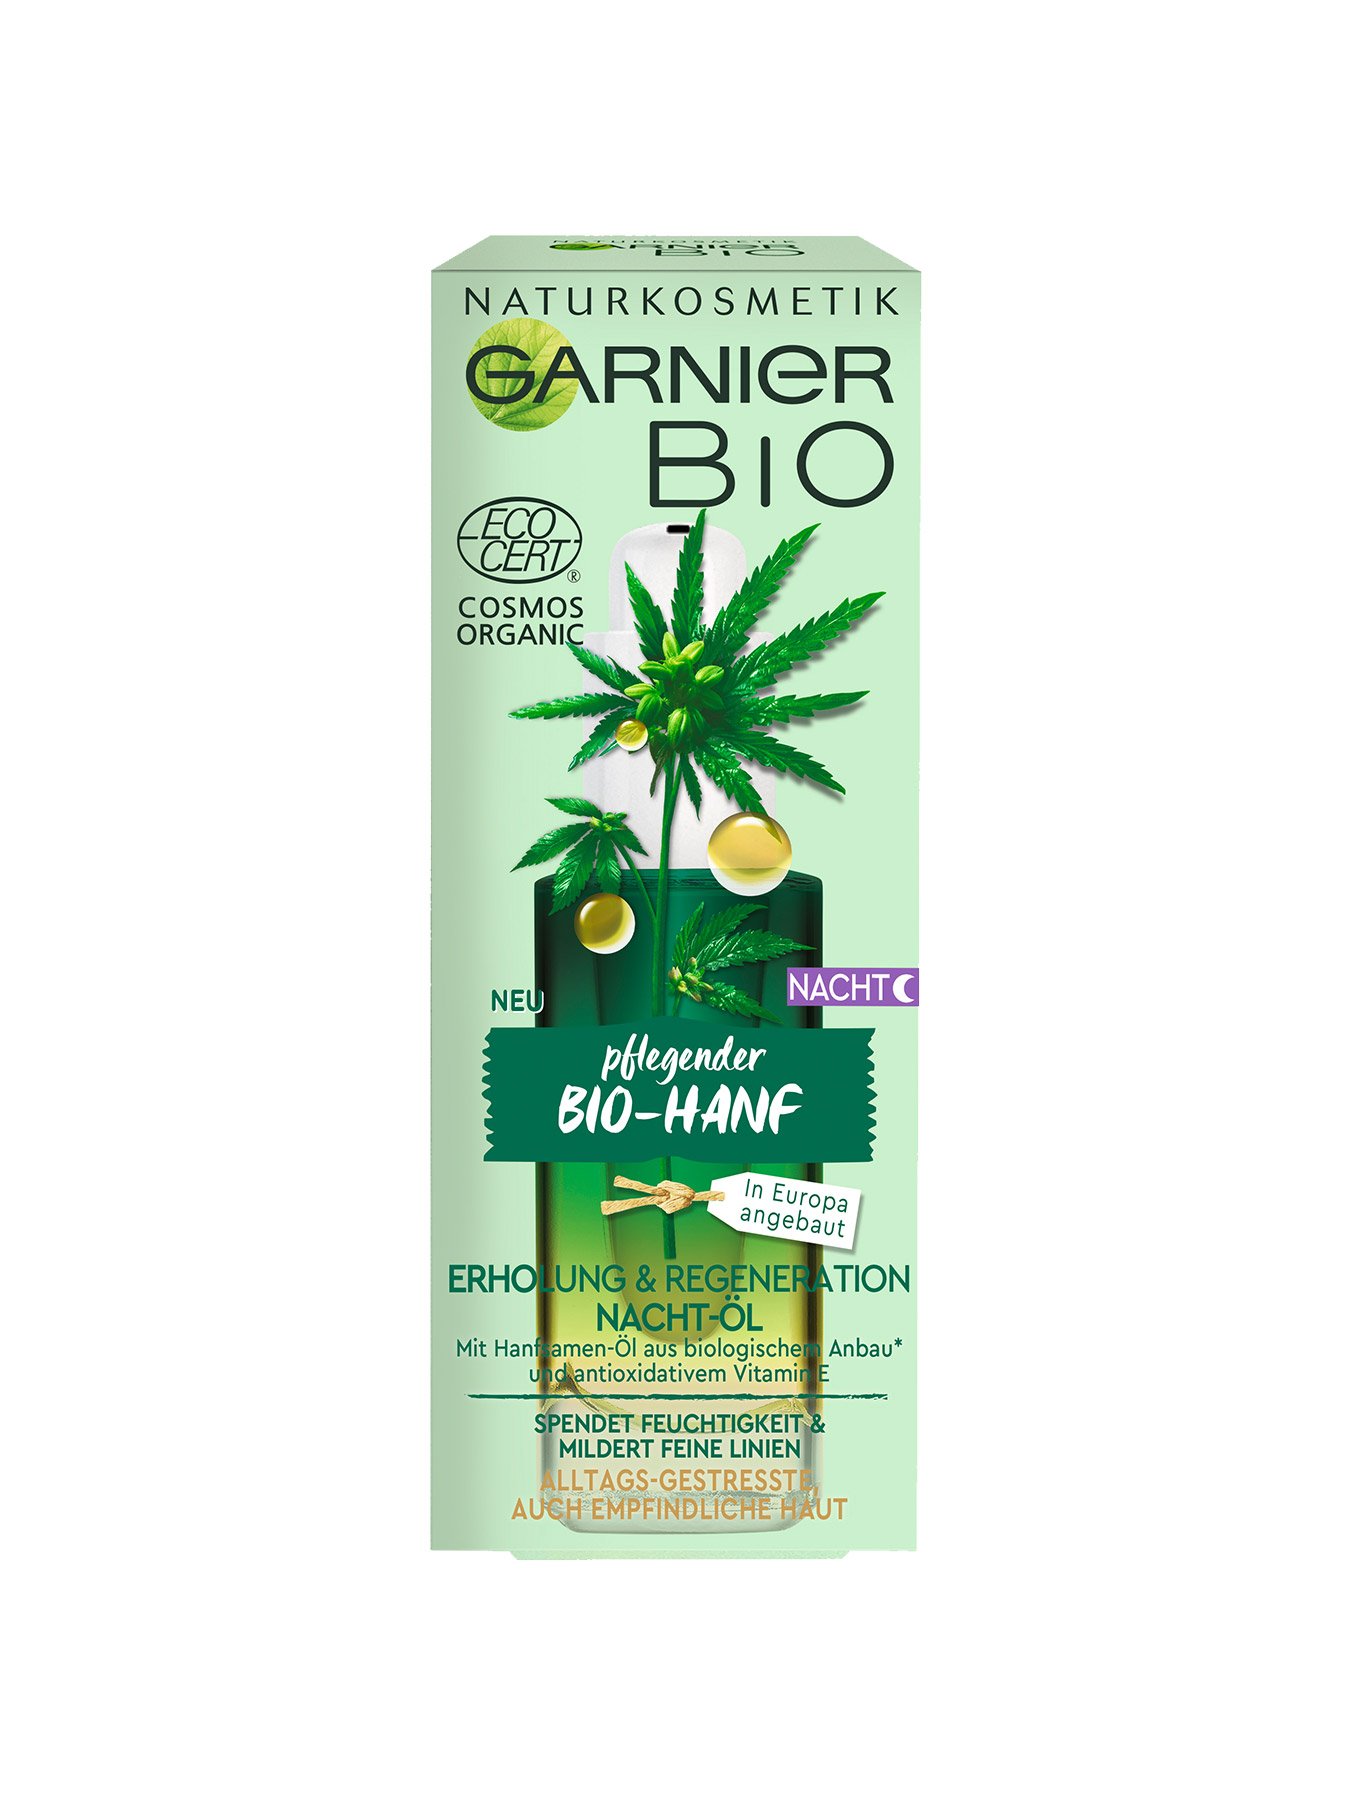 Bio Pflegendes Garnier Bio-Hanf | Nacht-Öl Garnier